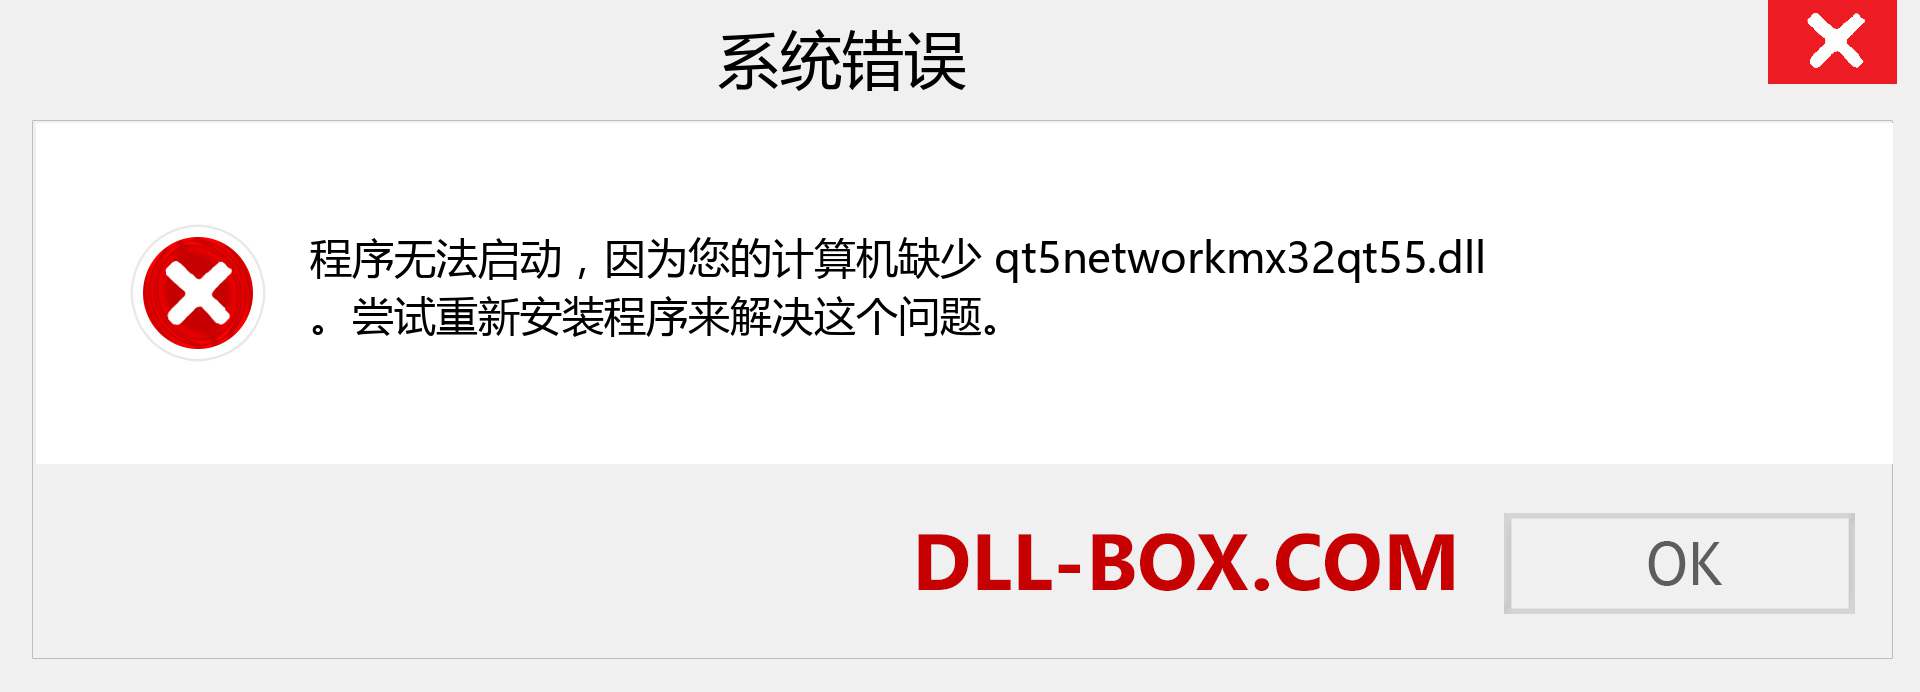 qt5networkmx32qt55.dll 文件丢失？。 适用于 Windows 7、8、10 的下载 - 修复 Windows、照片、图像上的 qt5networkmx32qt55 dll 丢失错误